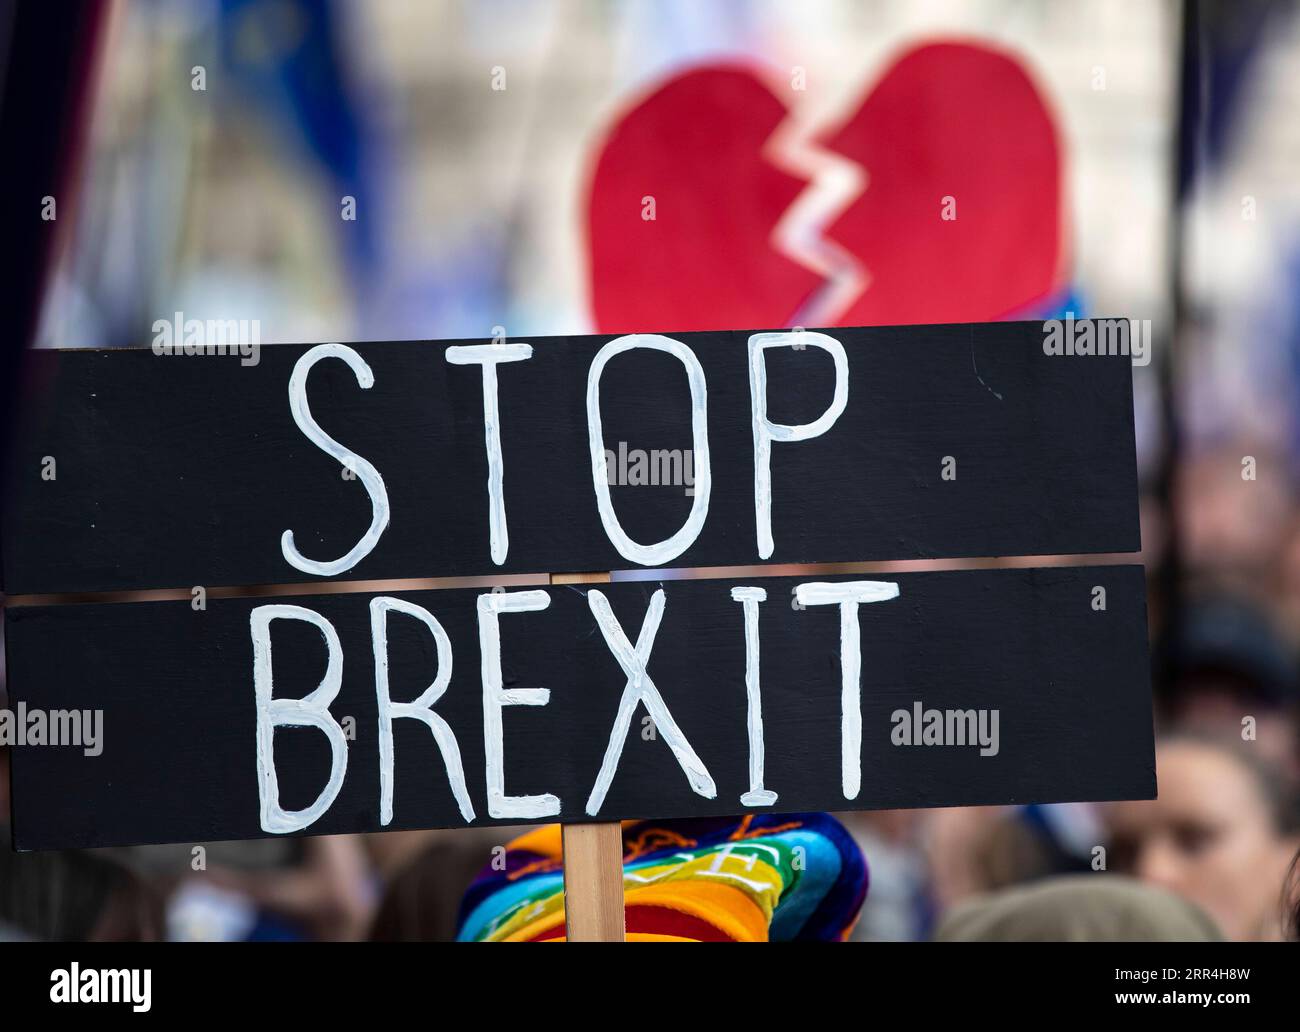 201205 -- LONDON, 5. Dez. 2020 -- Aktenfoto vom 19. Oktober 2019 zeigt, wie Menschen gemeinsam an der Final Say-Veranstaltung auf dem Parliament Square in London teilnehmen. Nach einer Woche intensiver Handelsverhandlungen in London einigten sich die Verhandlungsführer aus Großbritannien und der Europäischen Union am Freitag darauf, die Gespräche aufgrund erheblicher Unterschiede zu unterbrechen. GROSSBRITANNIEN-LONDON-BREXIT-HANDELSGESPRÄCHE-PAUSE HANXYAN PUBLICATIONXNOTXINXCHN Stockfoto